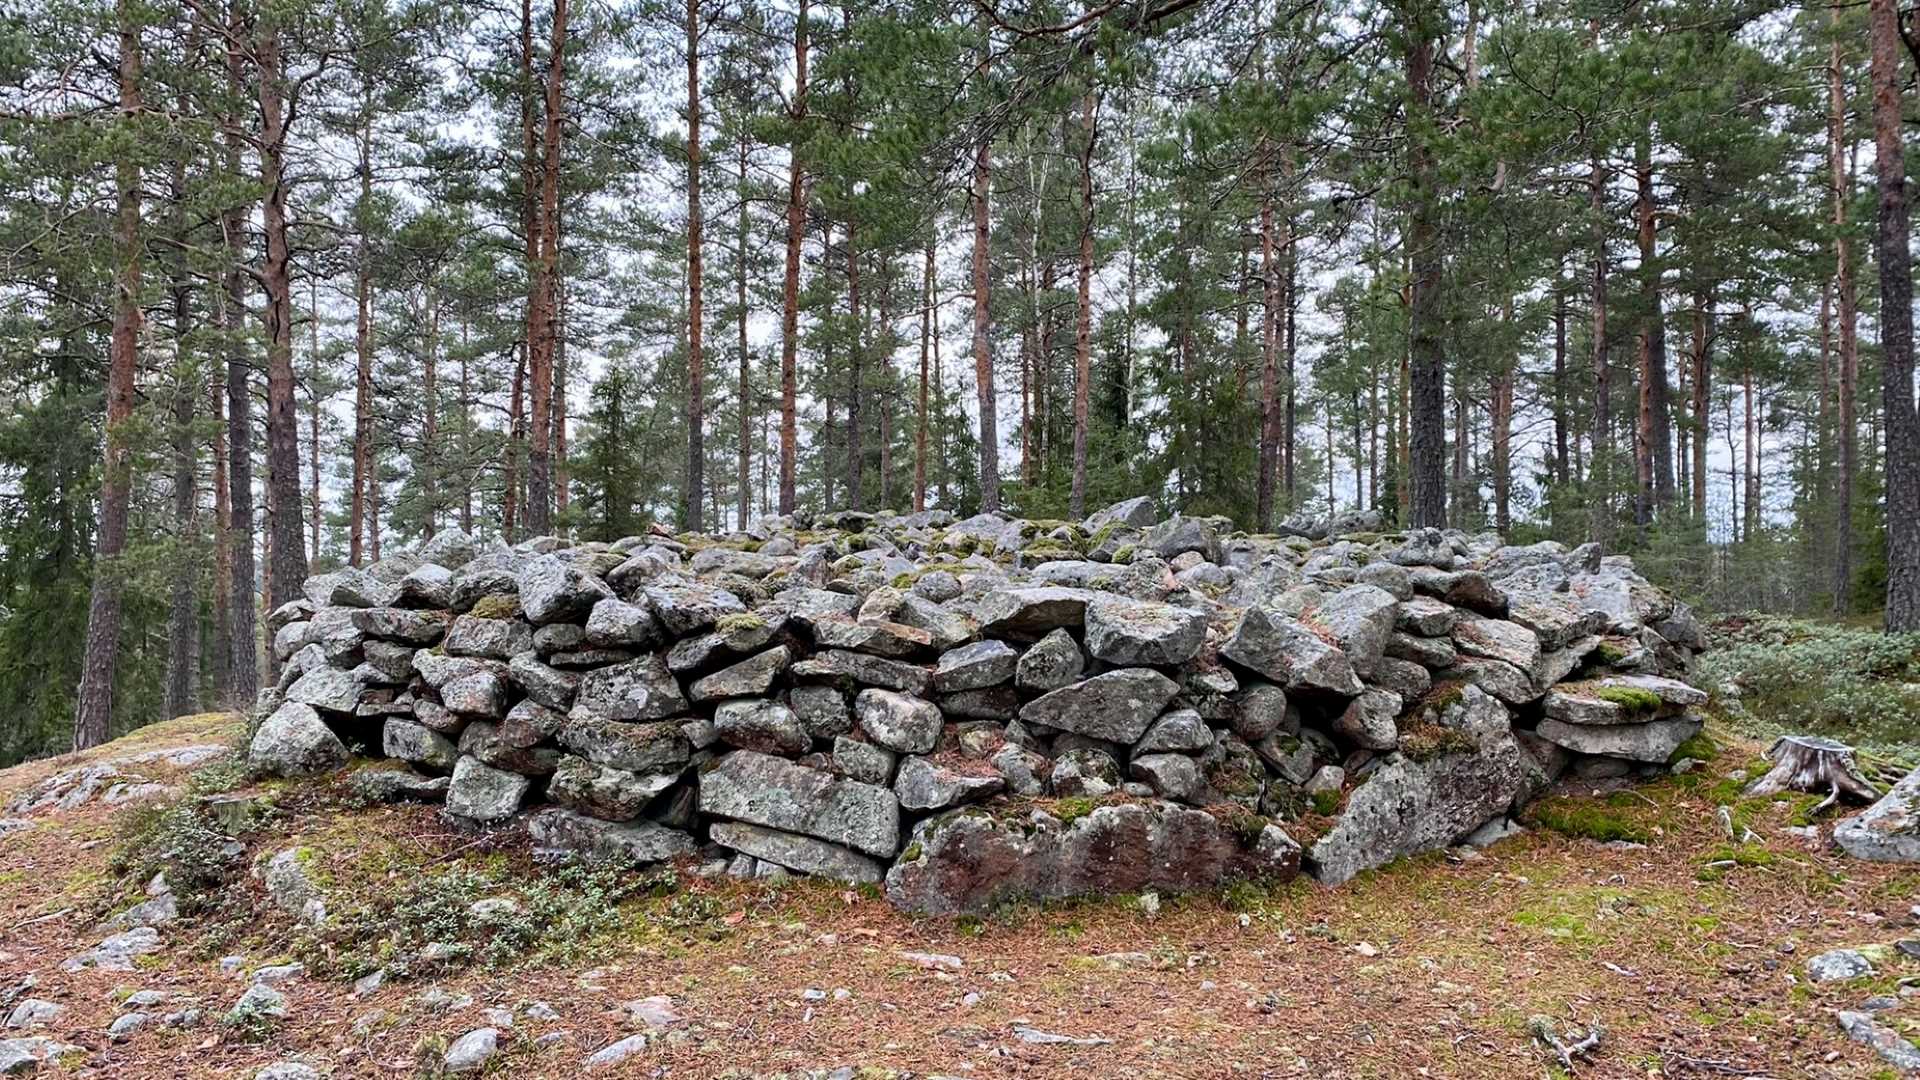 Penimäki heap tombs in Paimio